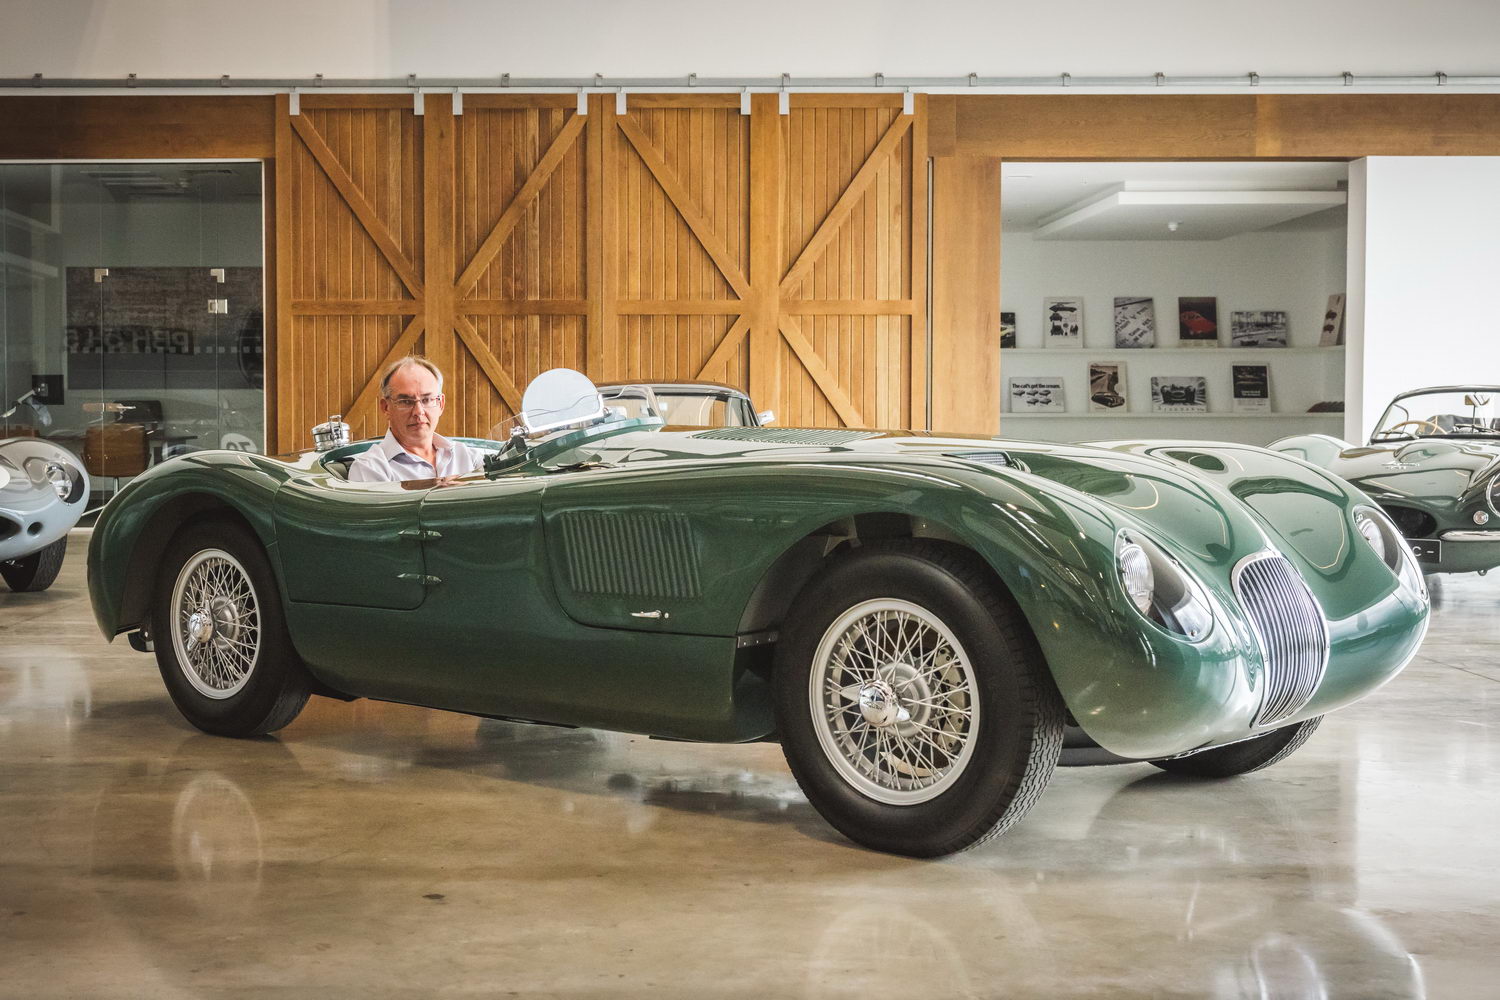 Jaguar recreates its Le Mans C-Type legacy